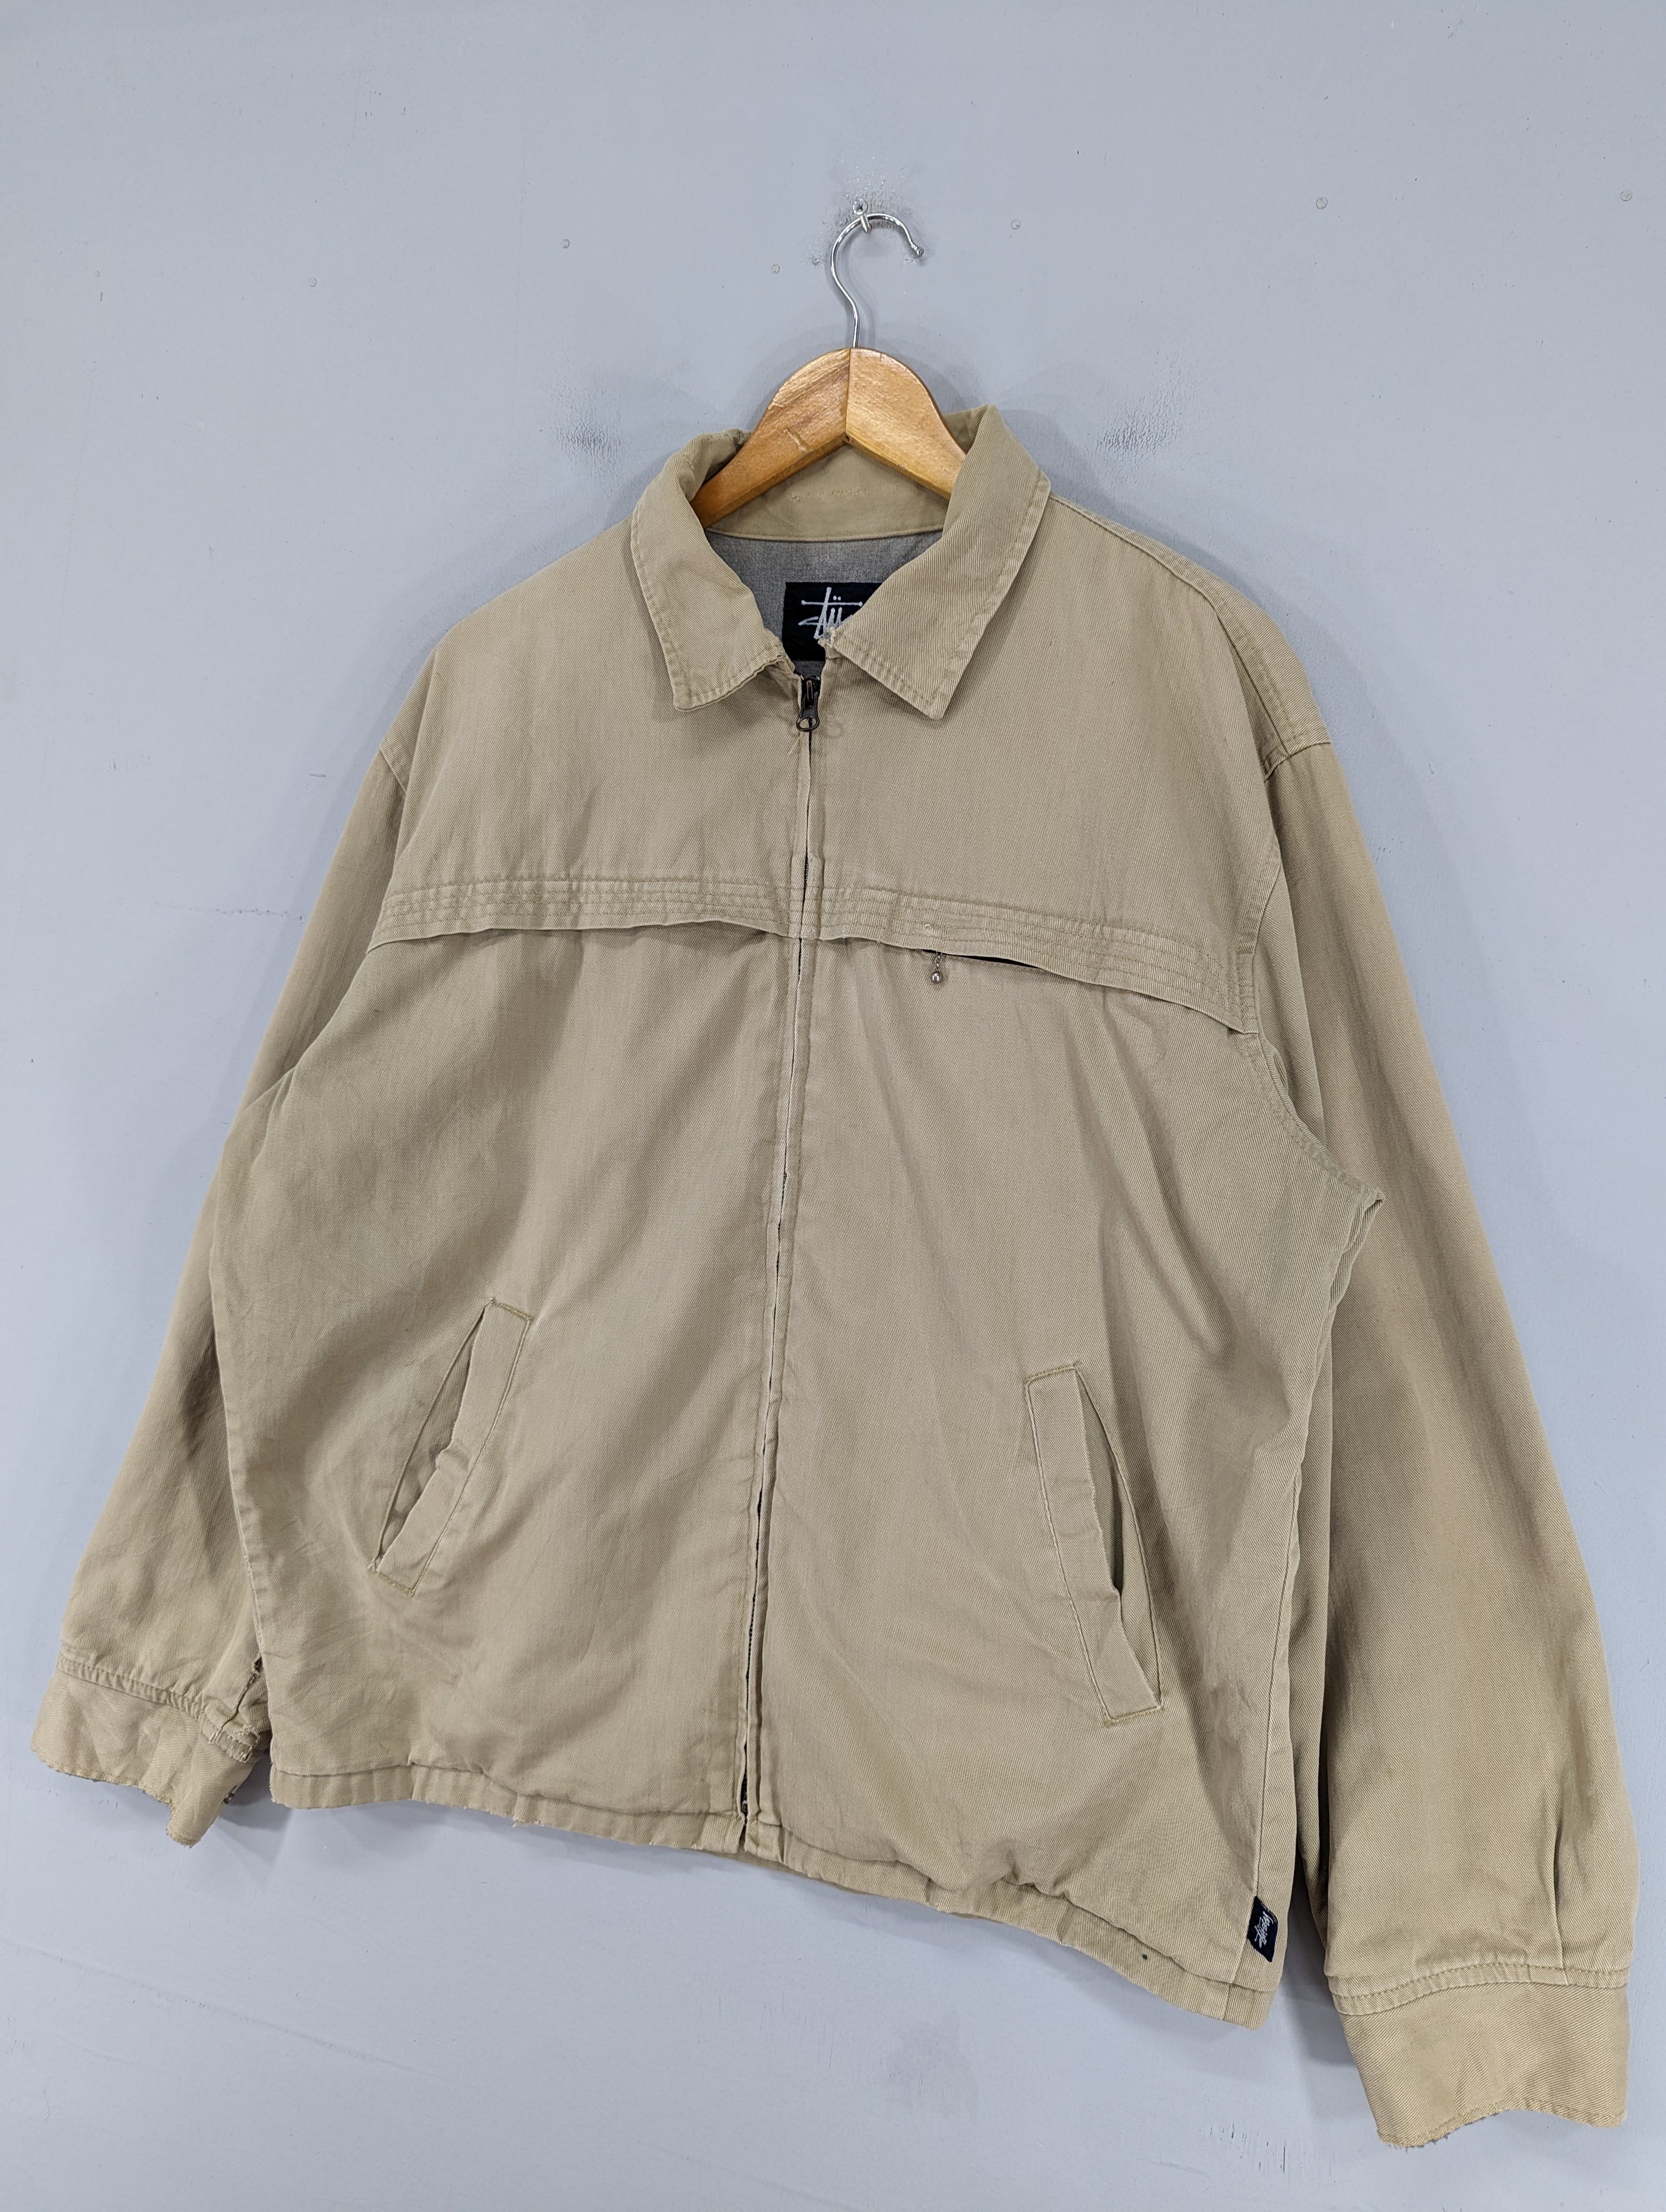 💥RARE💥Vintage 90s Stussy Distressed Workwear Jacket